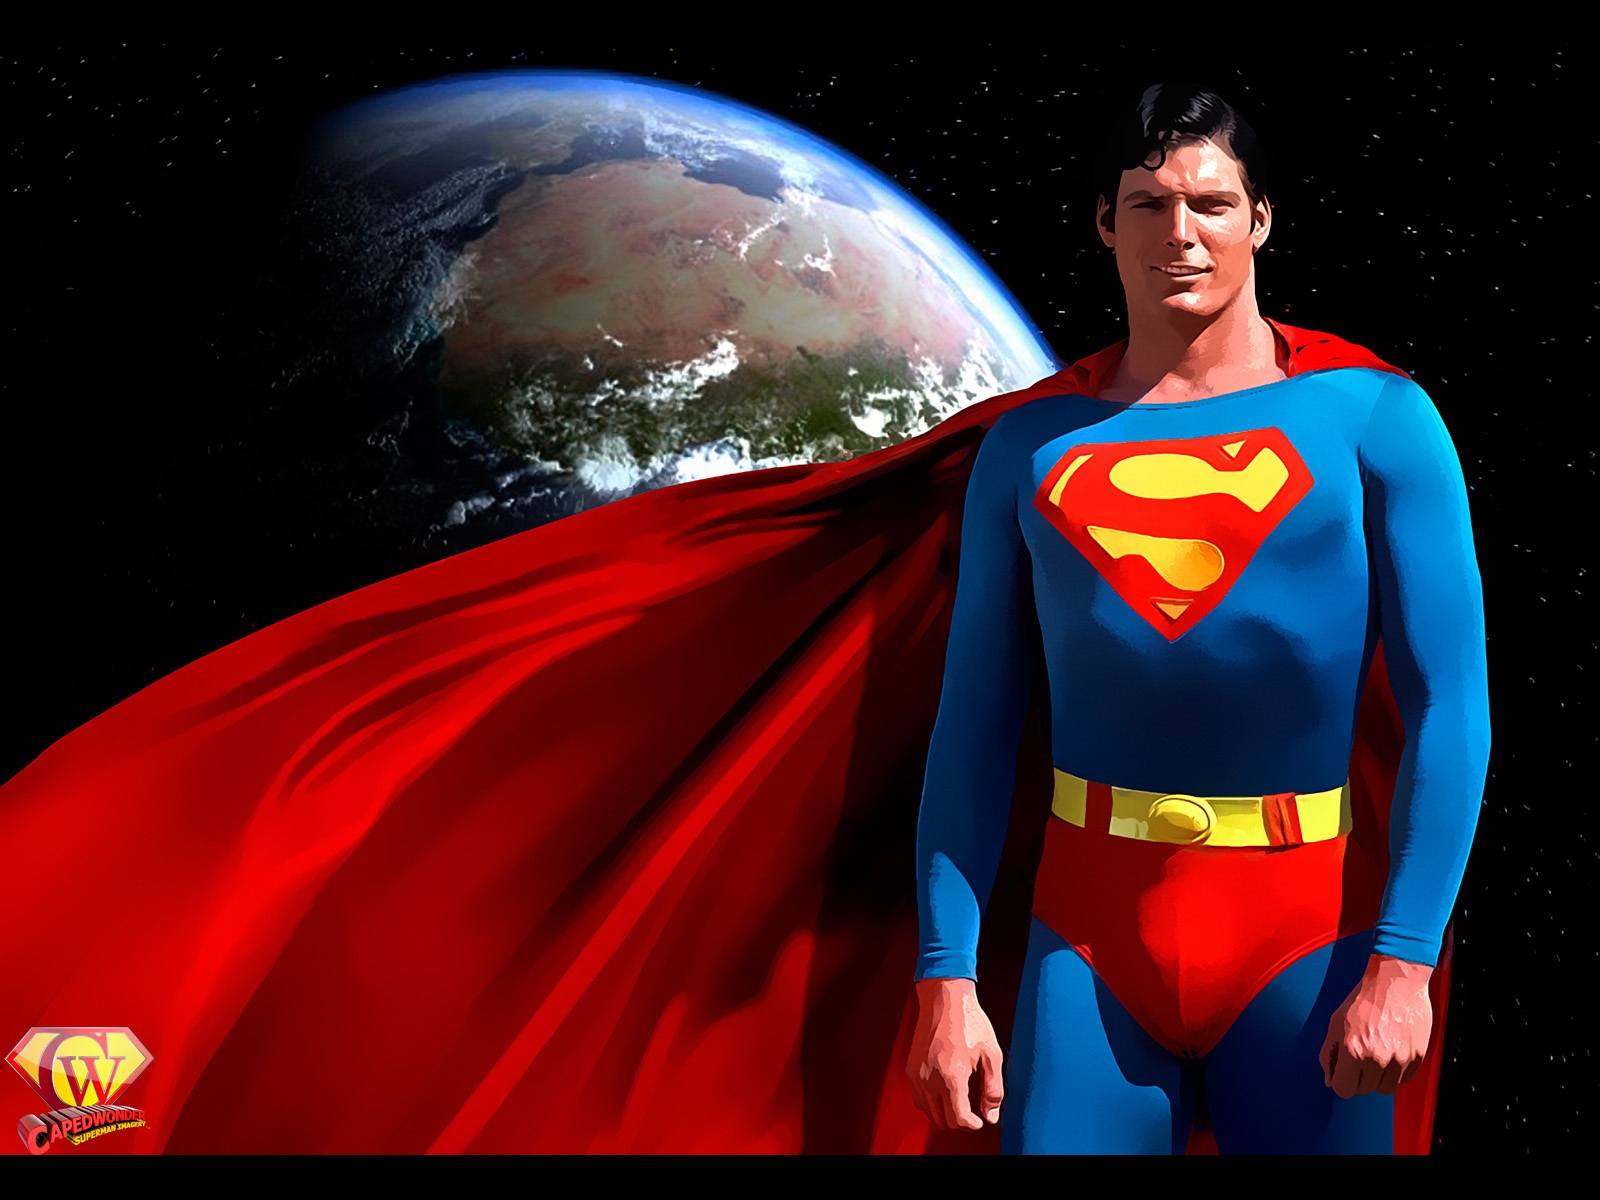 슈퍼맨 배경 화면 다운로드,슈퍼맨,슈퍼 히어로,소설 속의 인물,영웅,사법 리그